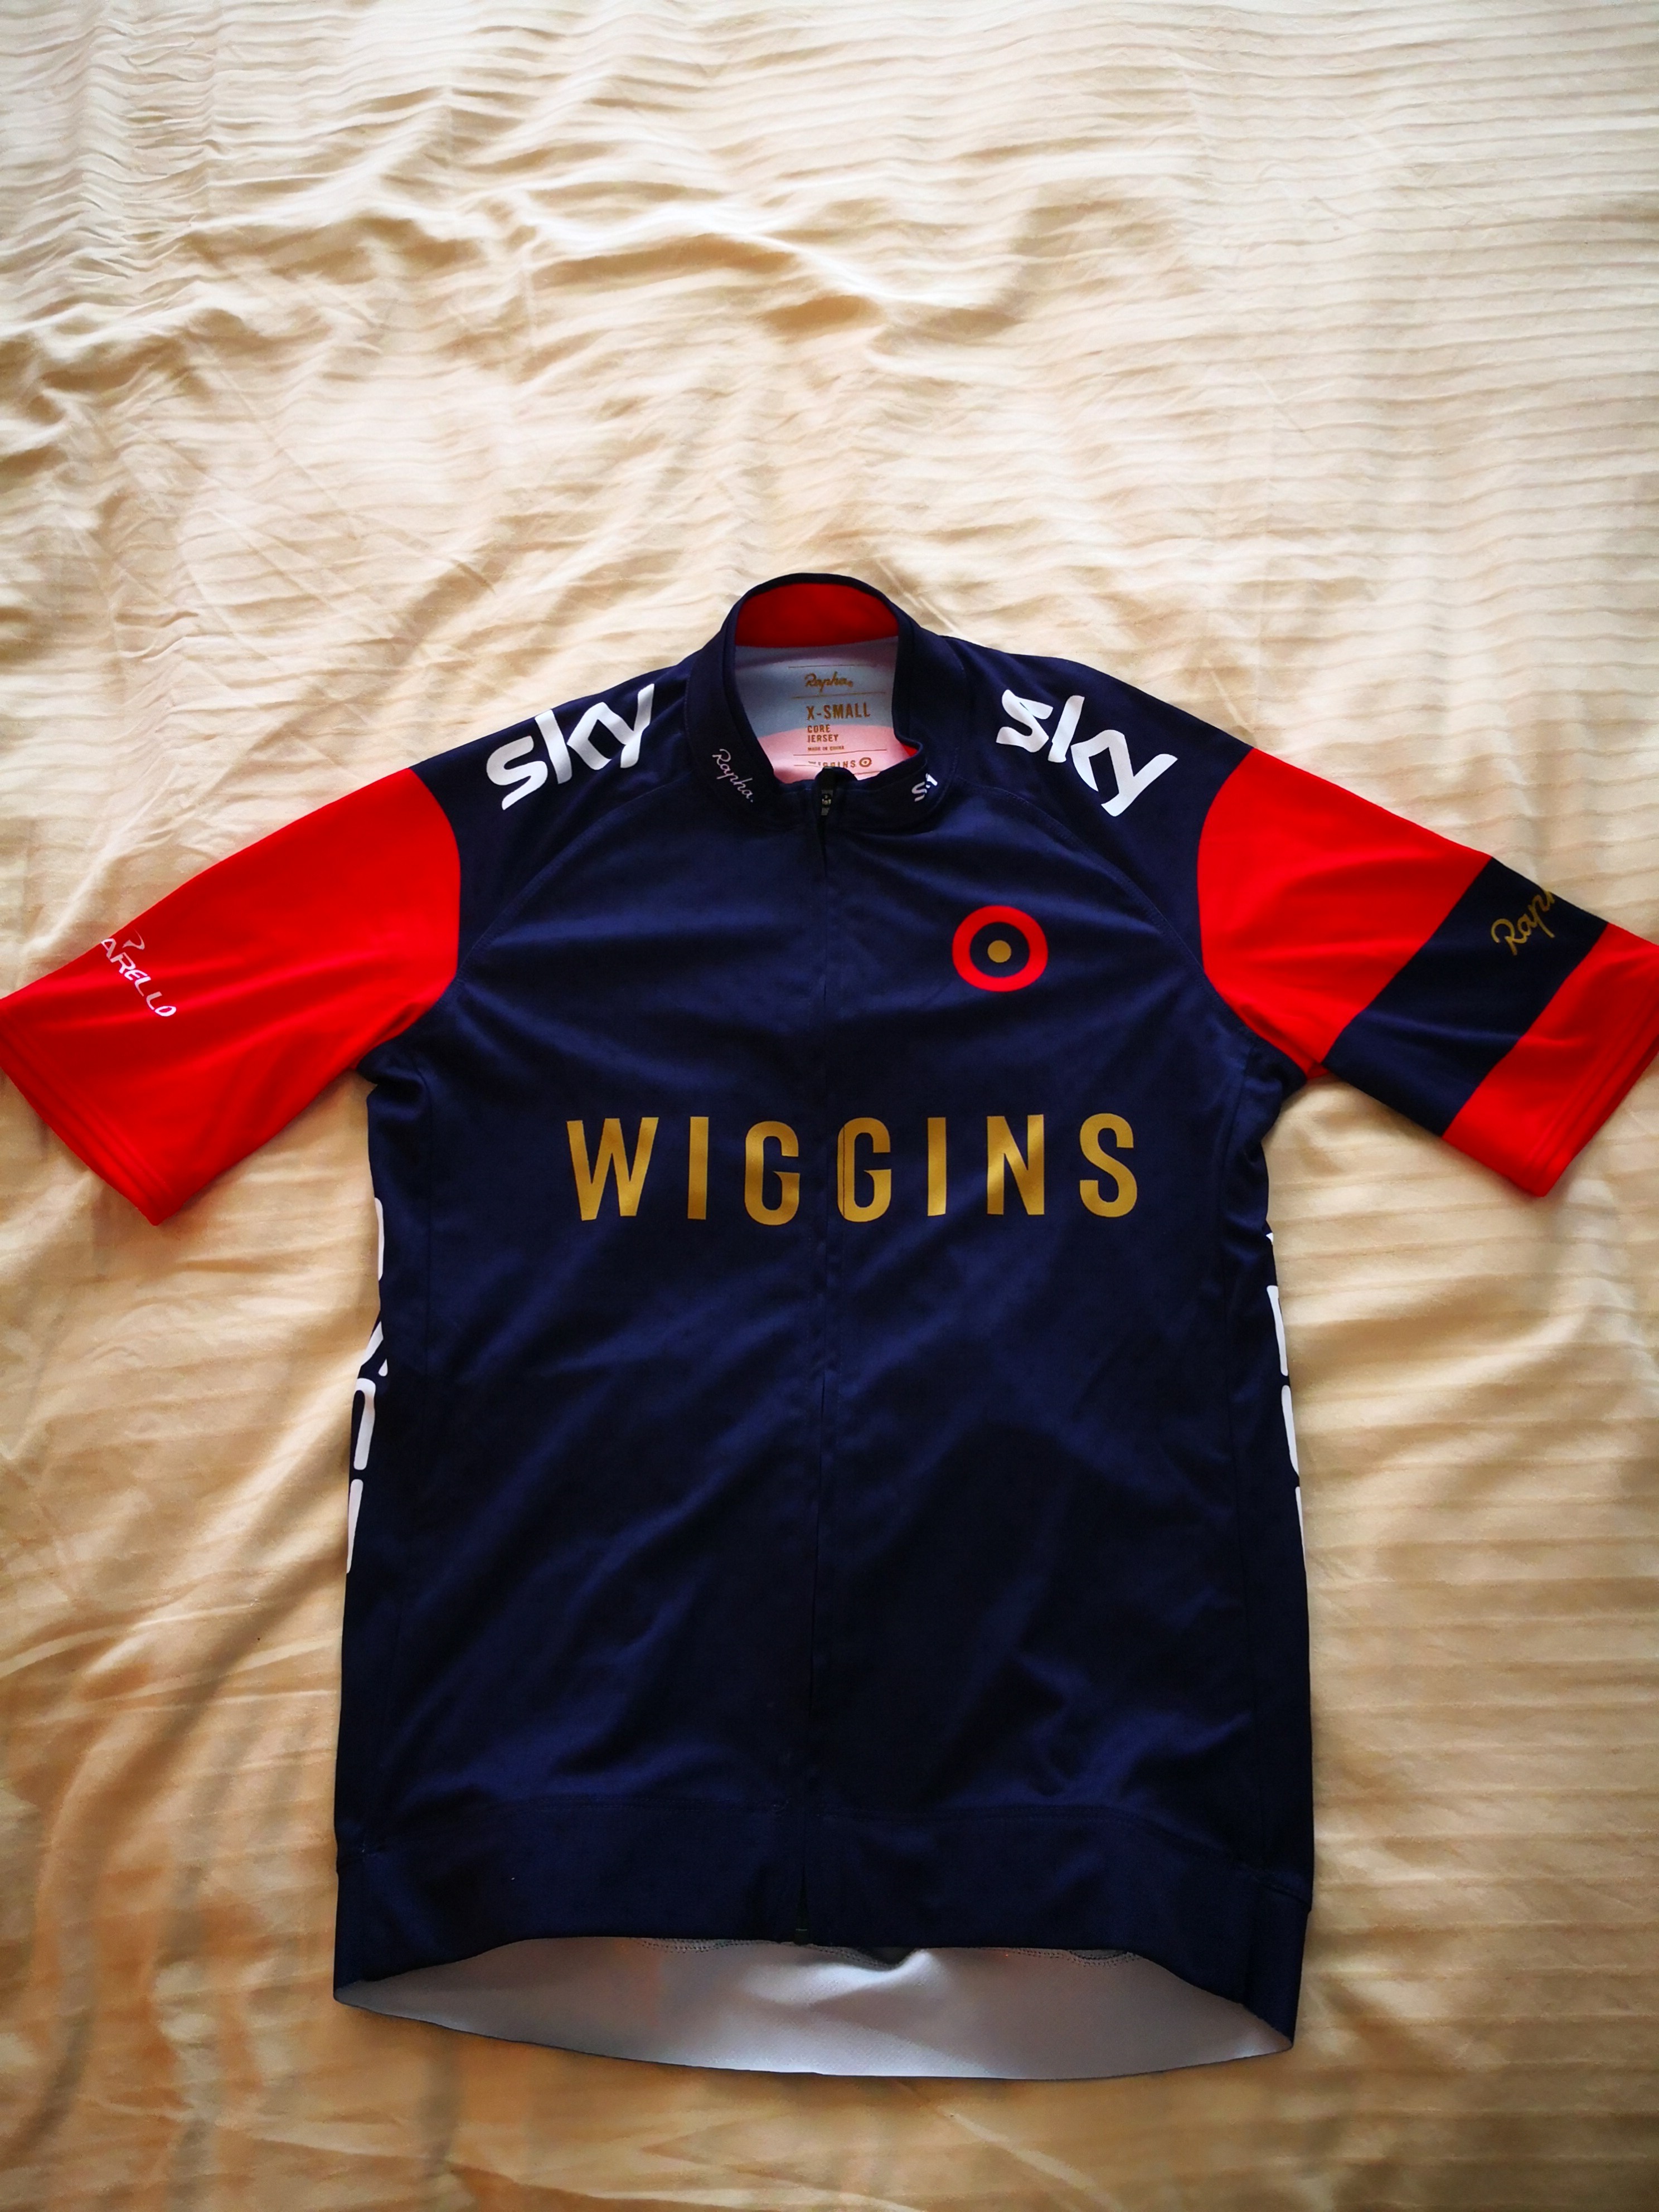 team wiggins jersey 2018